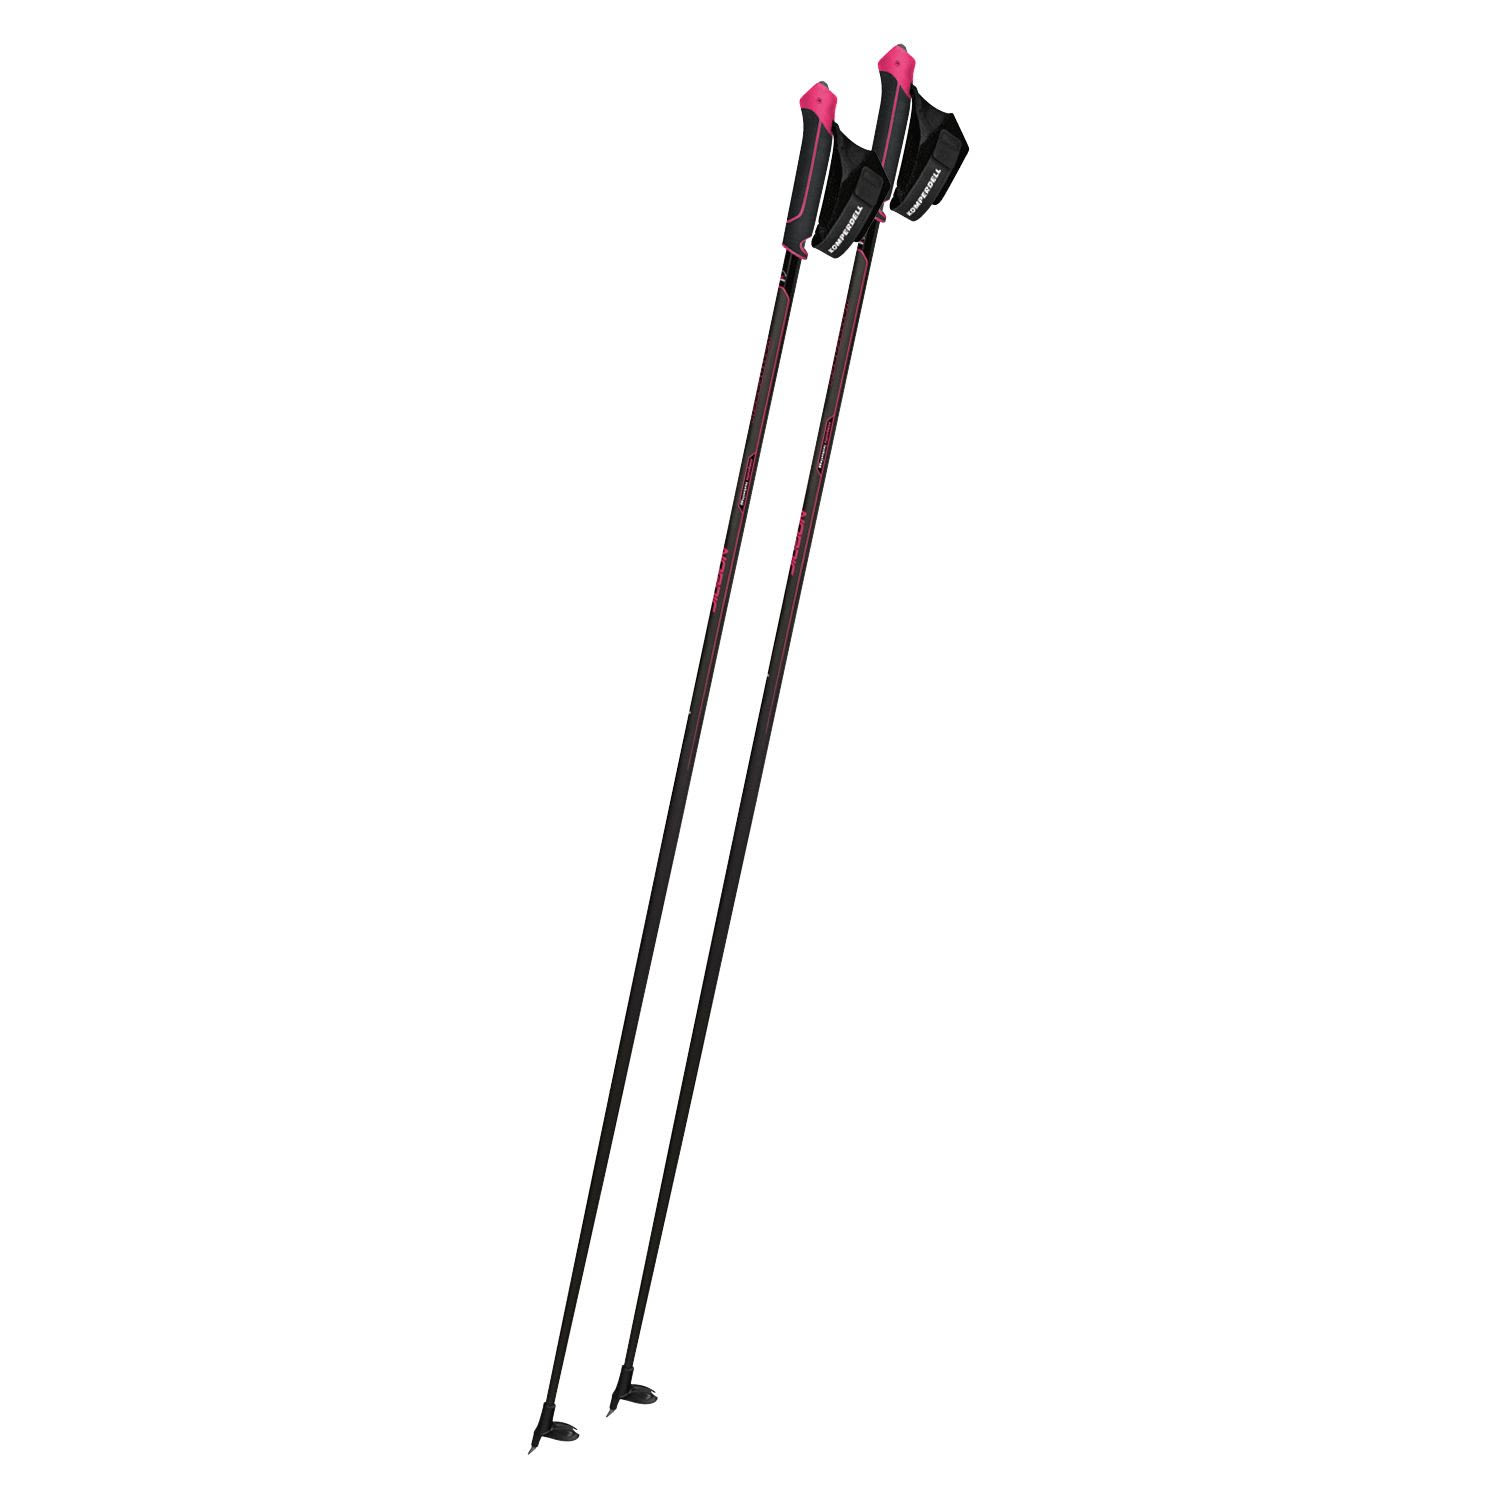 Komperdell Nordic Cx-100 Sport Pink / Schwarz | Größe 135 cm |  Langlaufstock